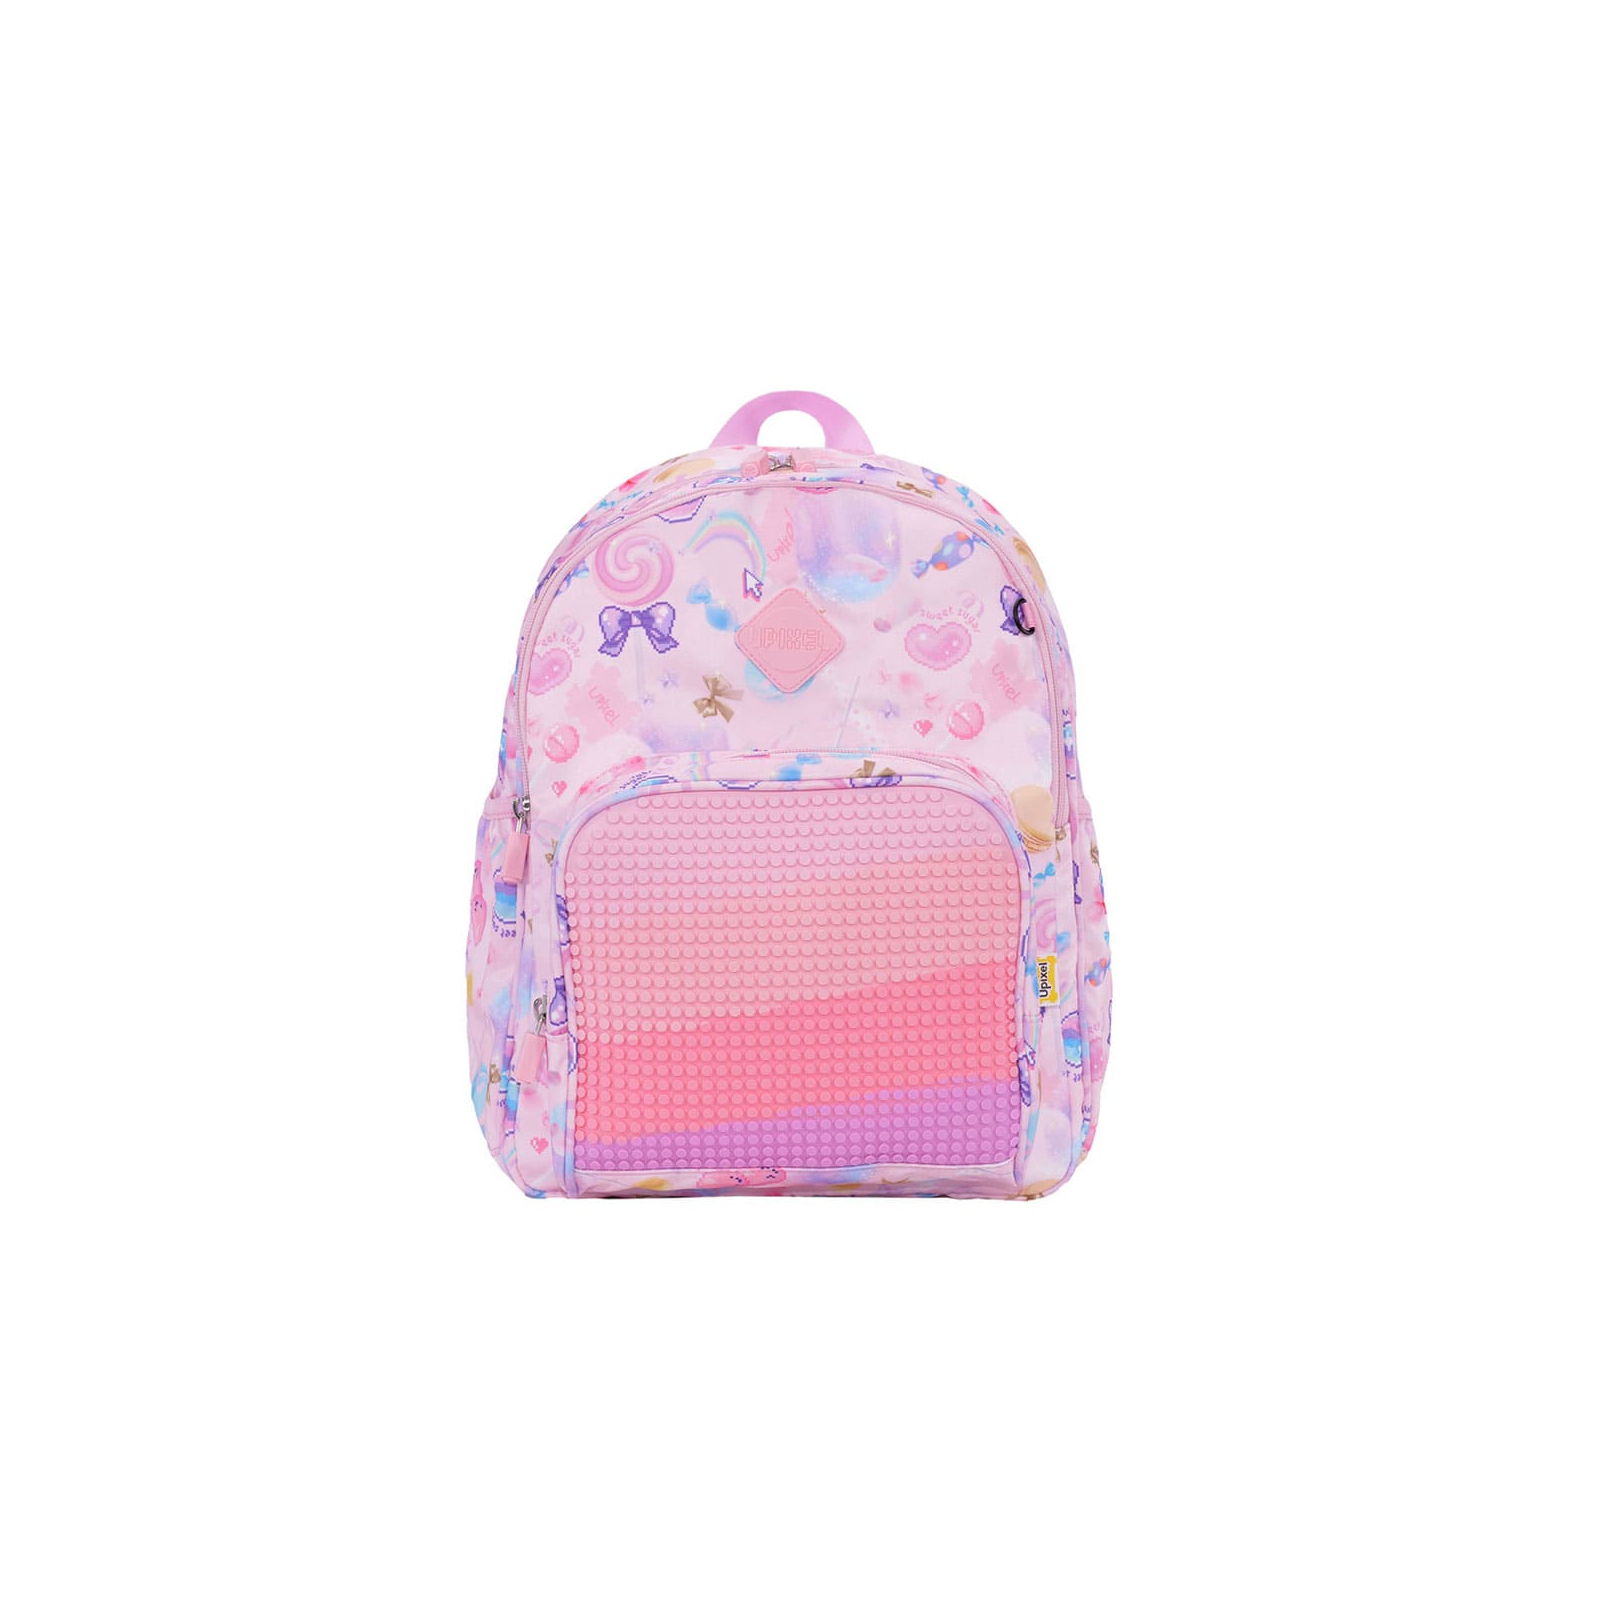 Рюкзак школьный Upixel Futuristic Kids School Bag - Розовый (U21-001-F) изображение 10